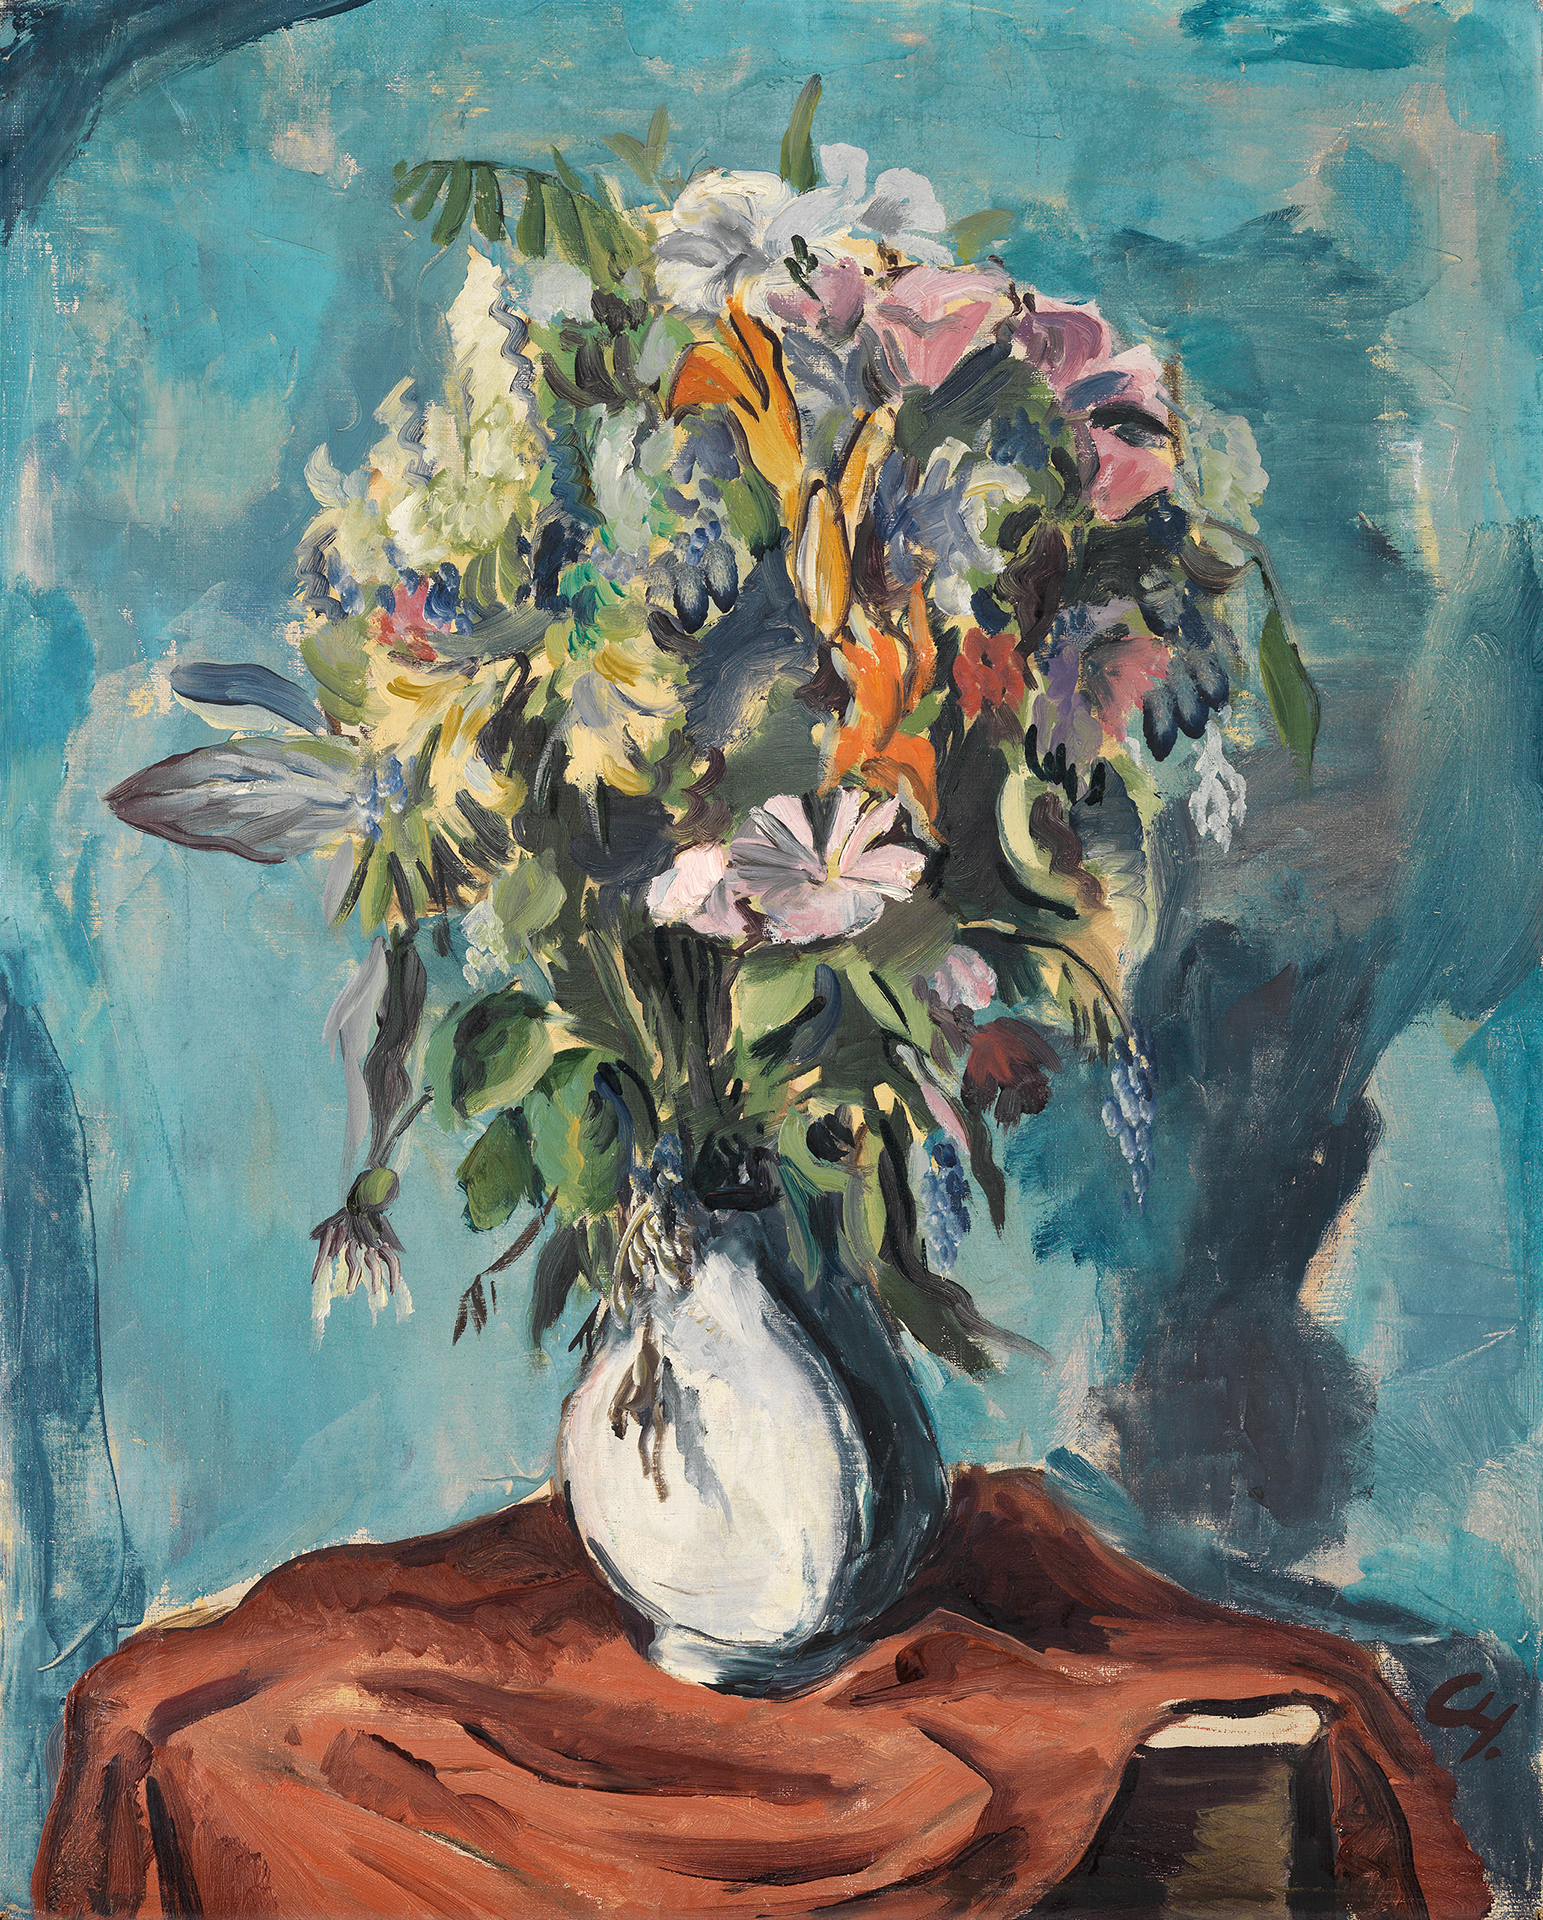 Gemälde von Karl Hofer. Vase mit großem bunten Blumenstrauß auf rotem drapierten Tuch vor blauem Hintergrund.